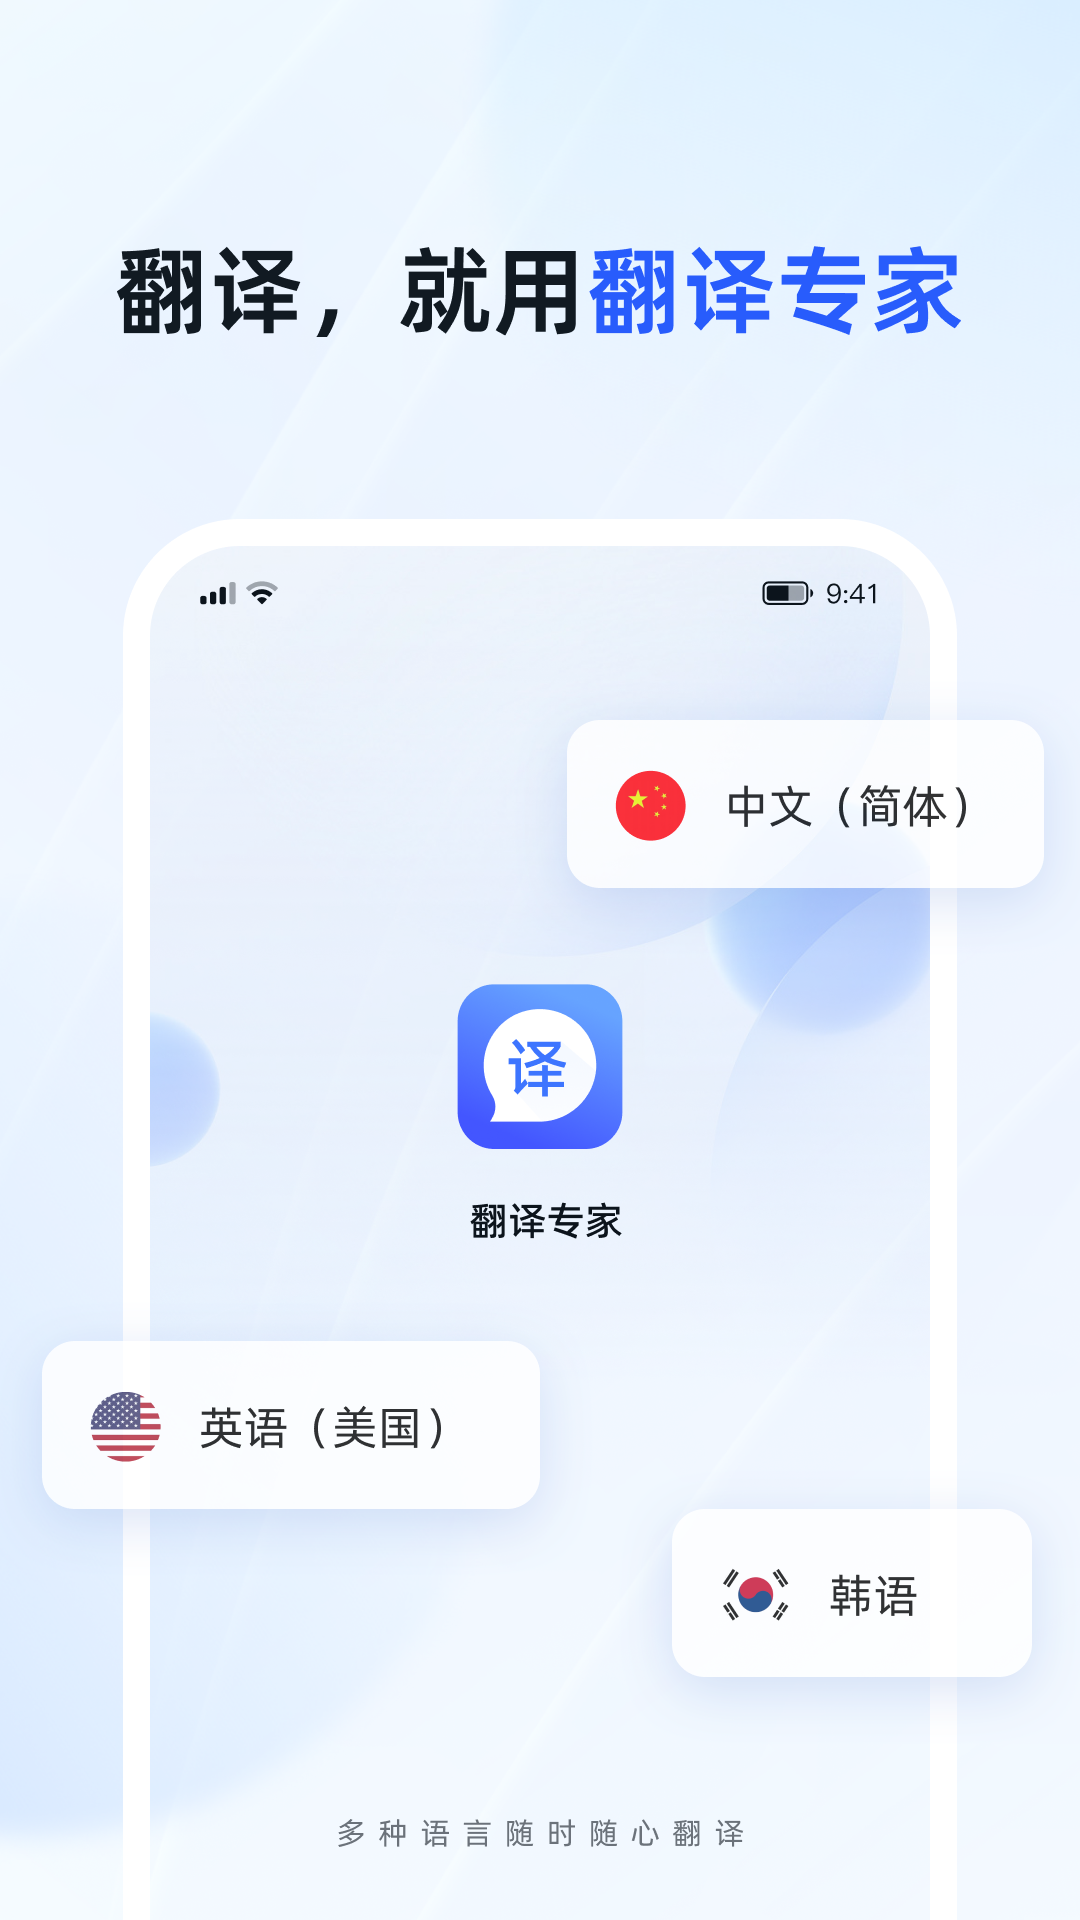 脉蜀翻译专家app下载,脉蜀翻译专家app安卓版 v1.0.0